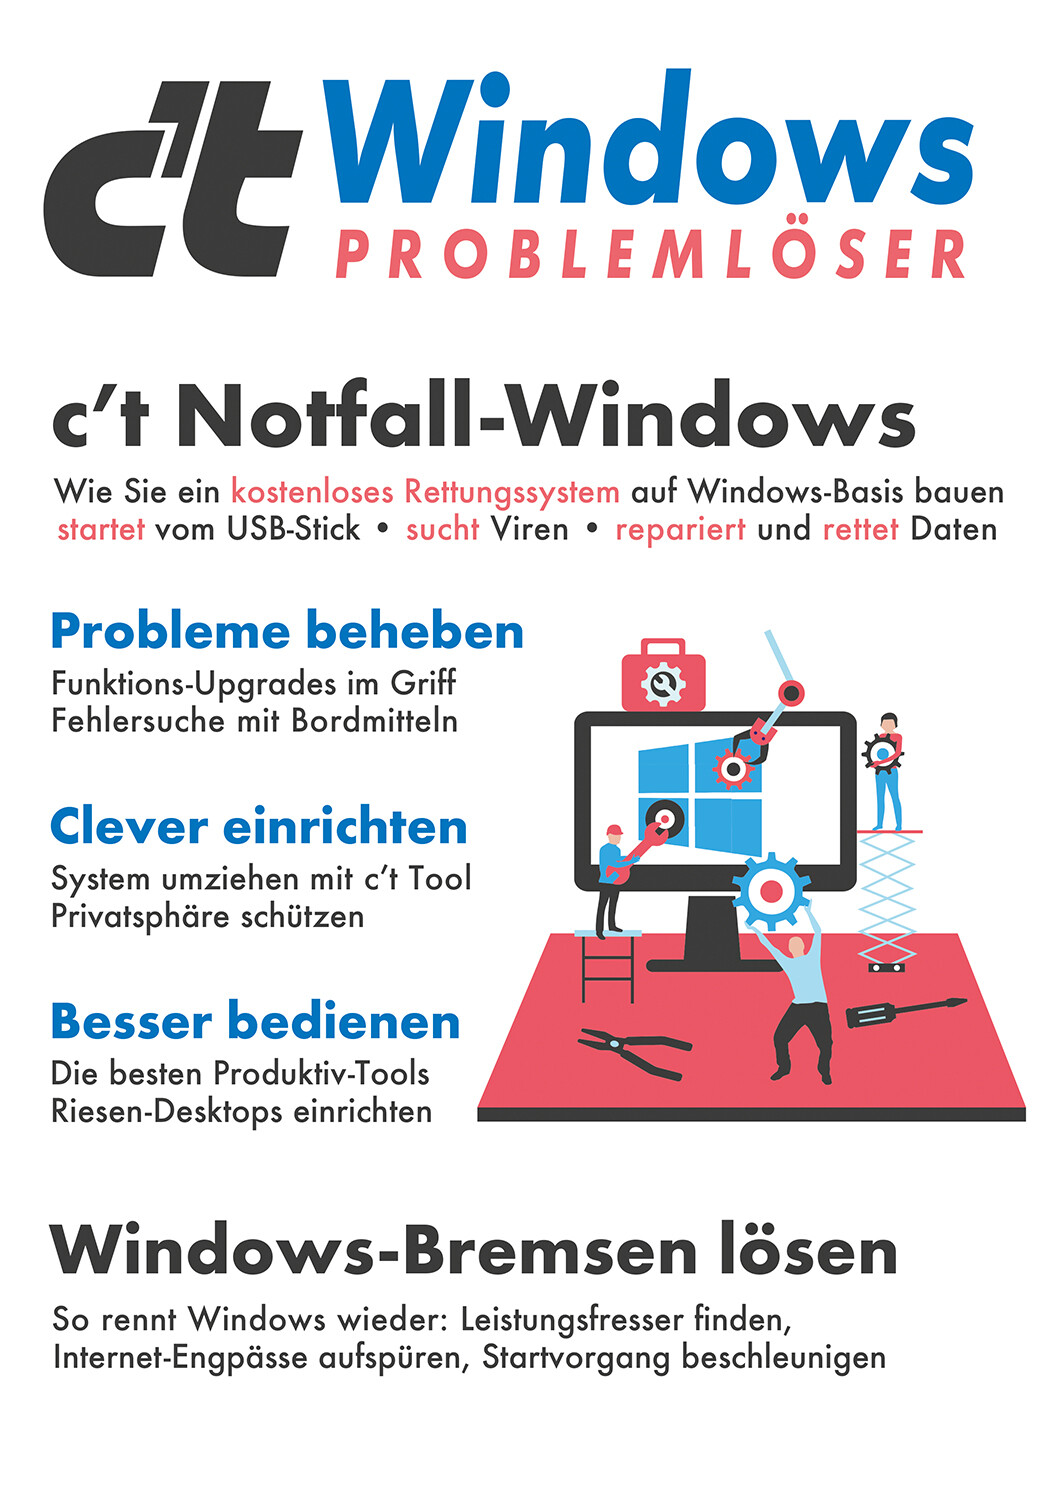 c't Windows Problemlöser